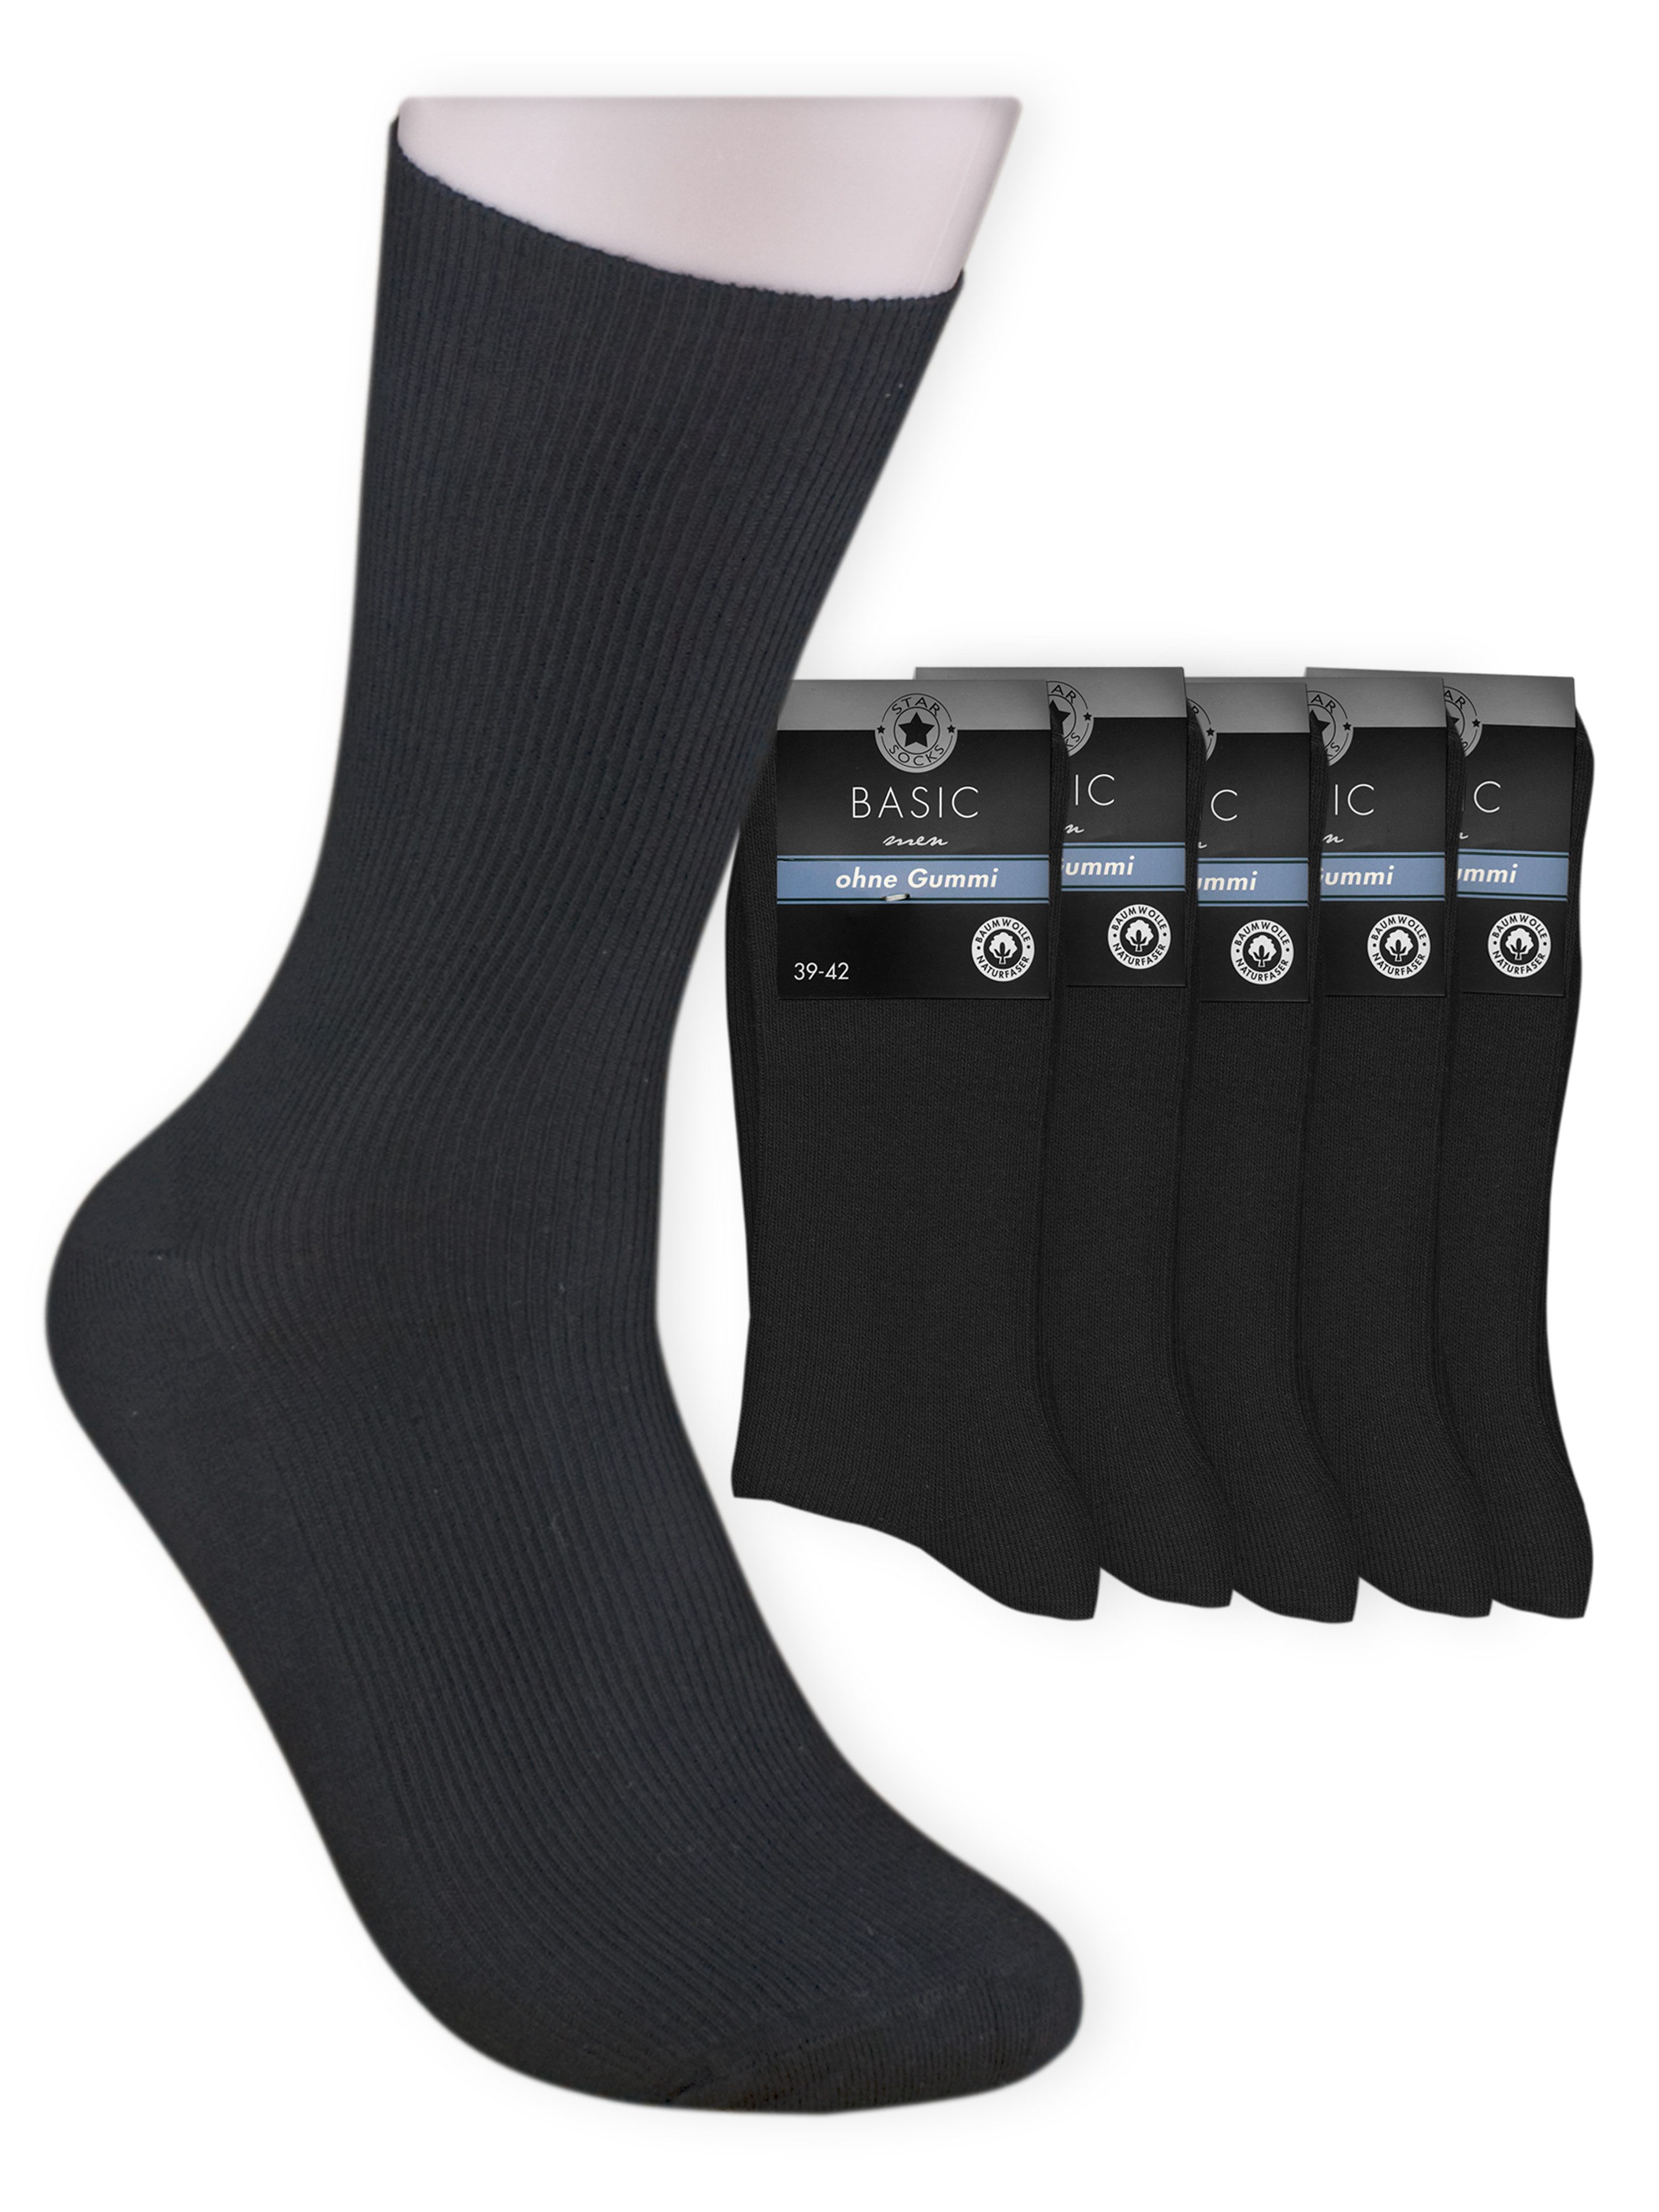 Die Sockenbude Basicsocken BASIC - Herrensocken (Bund, 5-Paar, schwarz) Diabetikersocken ohne Gummi aus 100 % Baumwolle